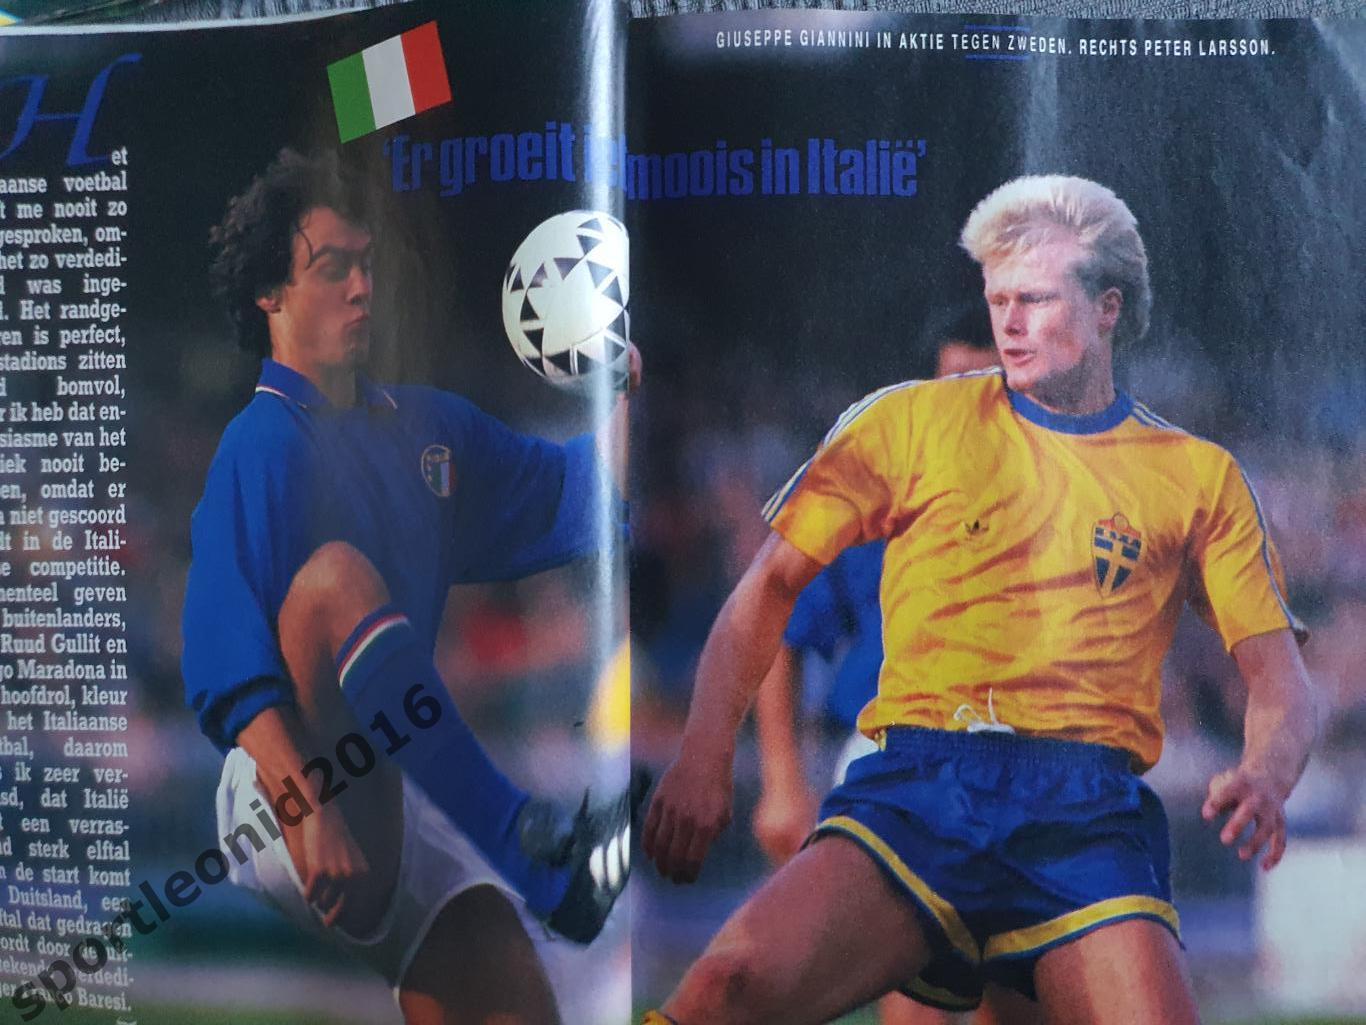 Voetbal International 1988.Годовая подписка.52 номера +4 спецвыпуска к Евро-88.4 7